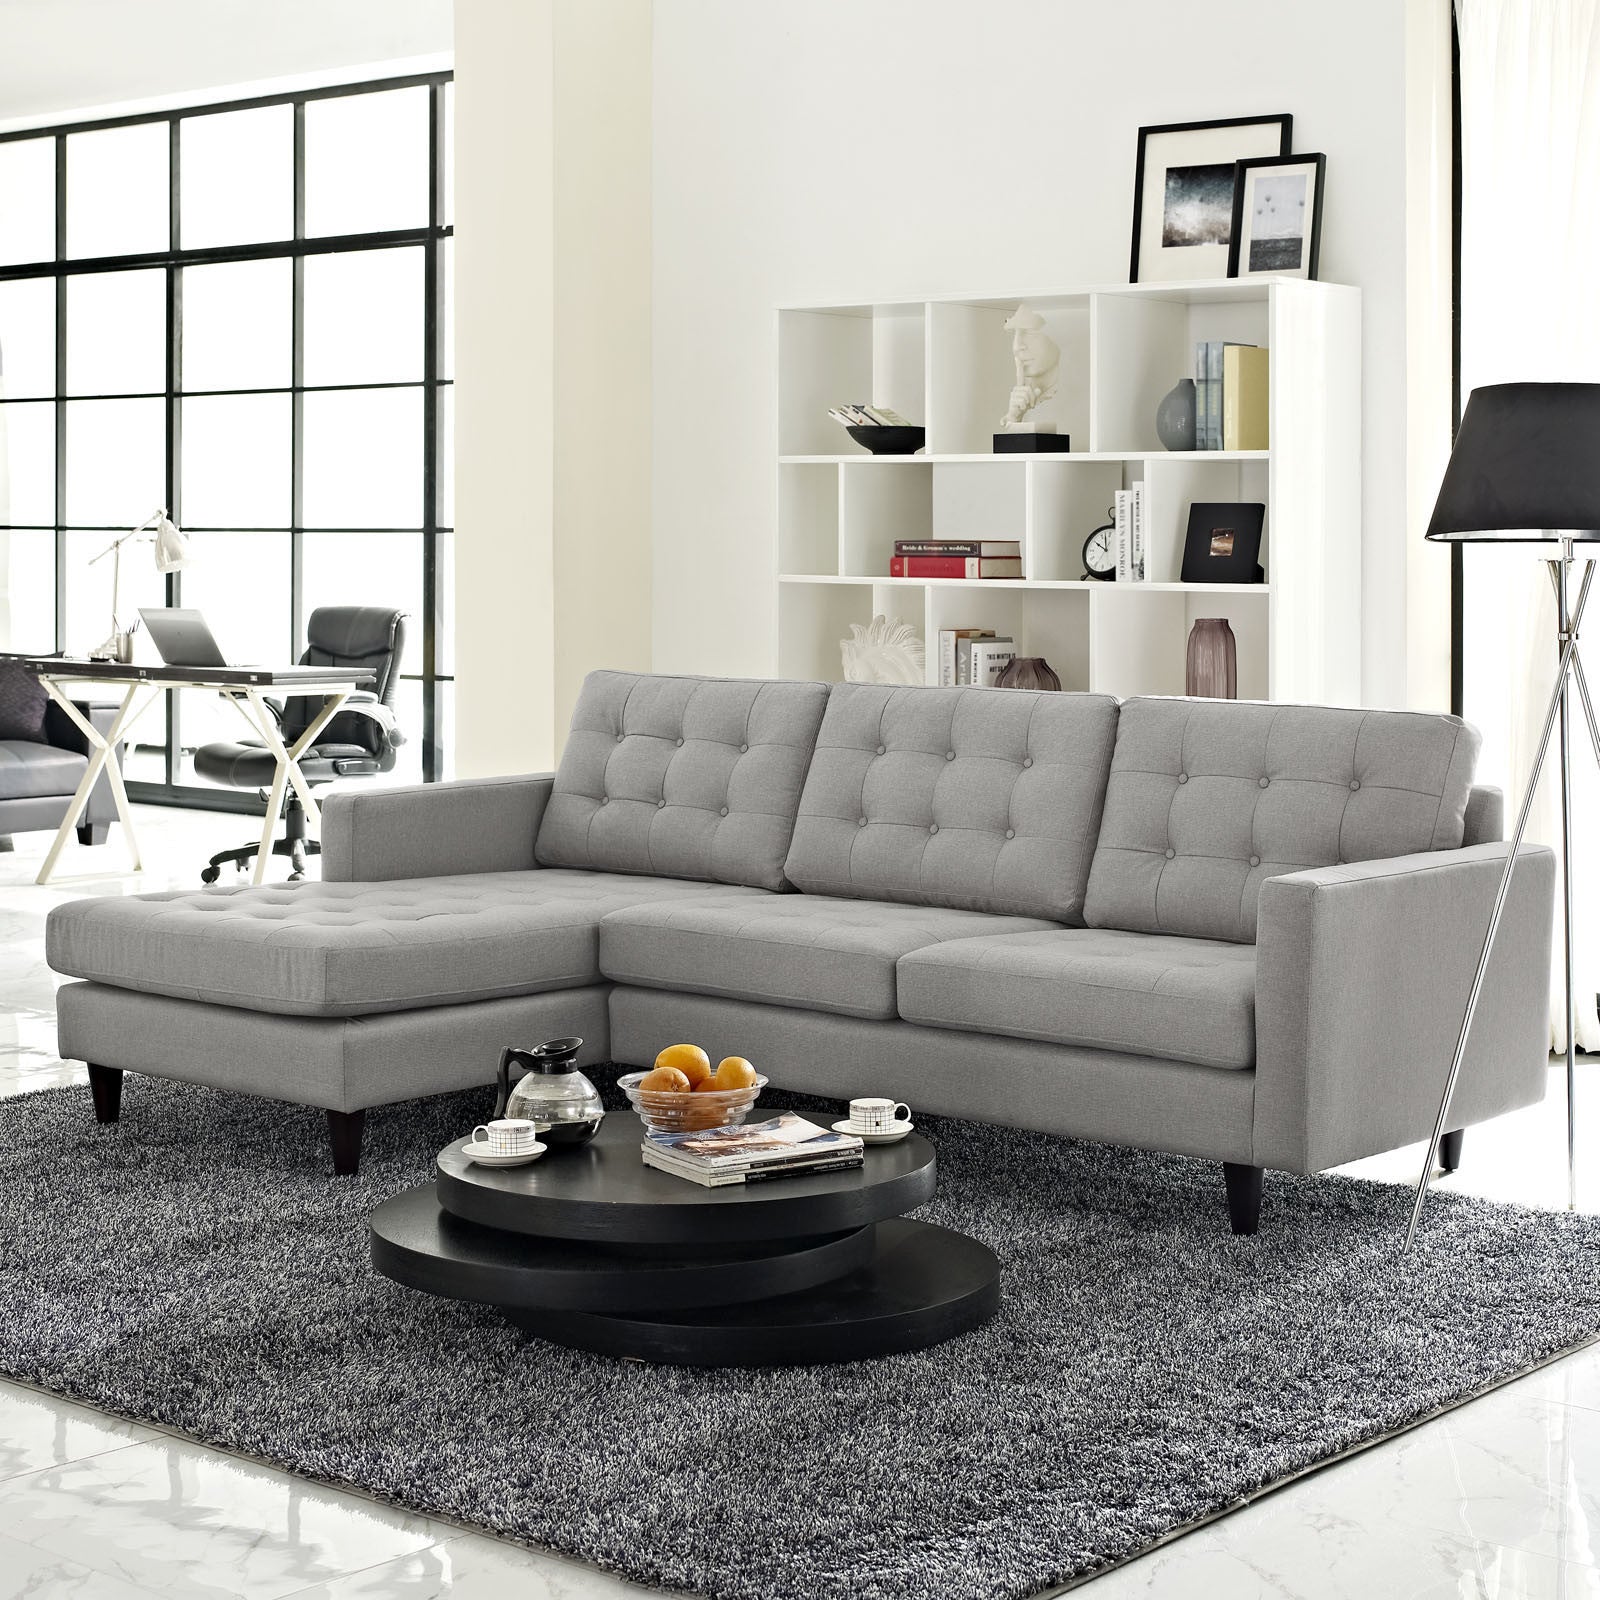 Era Upholstered Sectional Sofa Light Gray